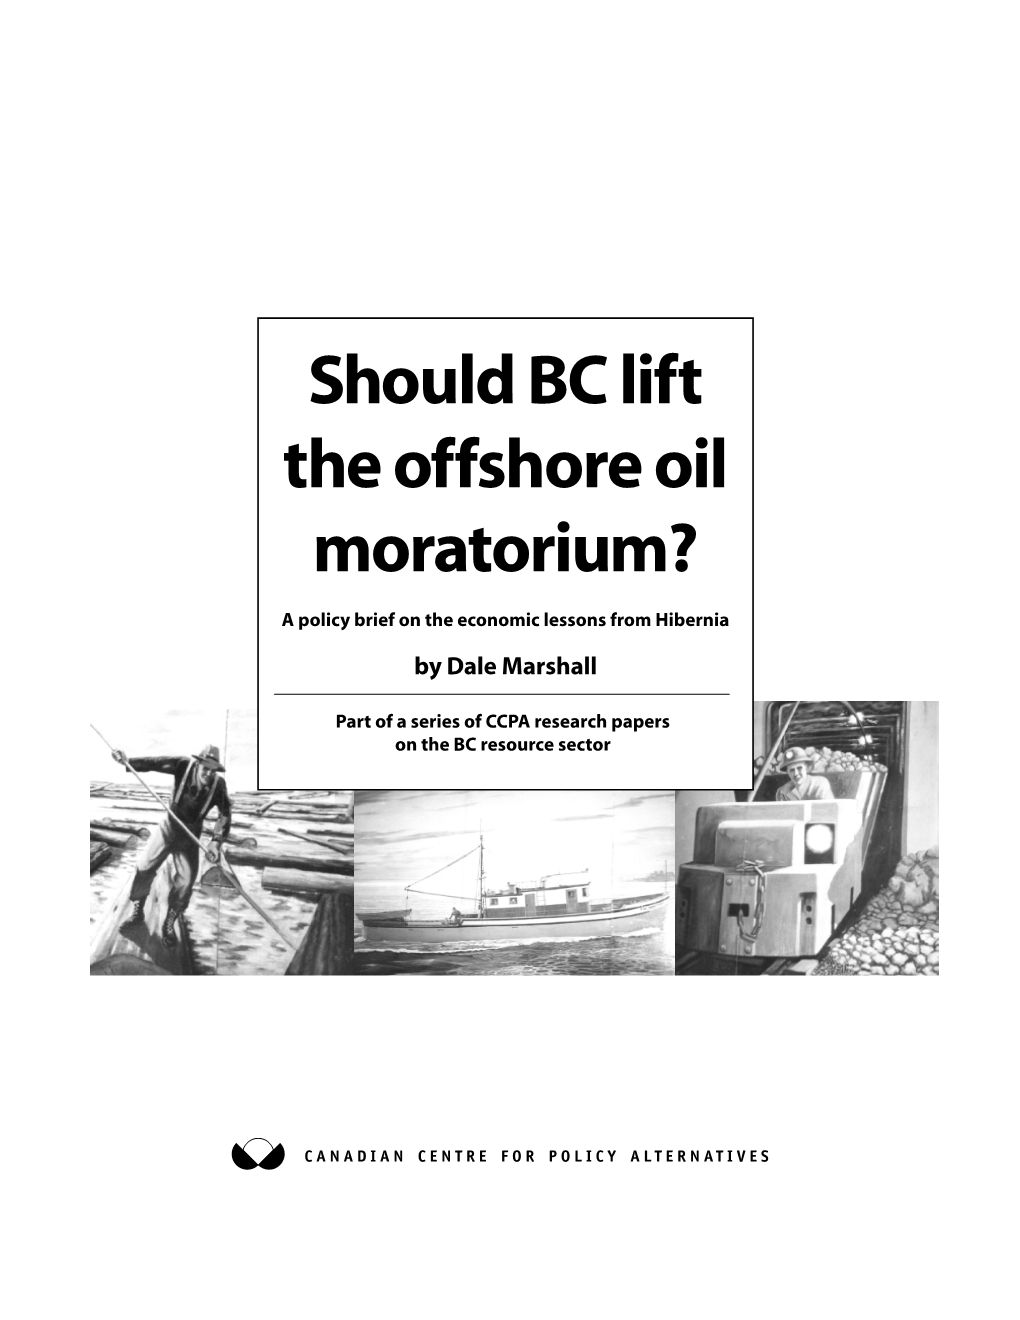 Should BC Lift the Offshore Oil Moratorium?